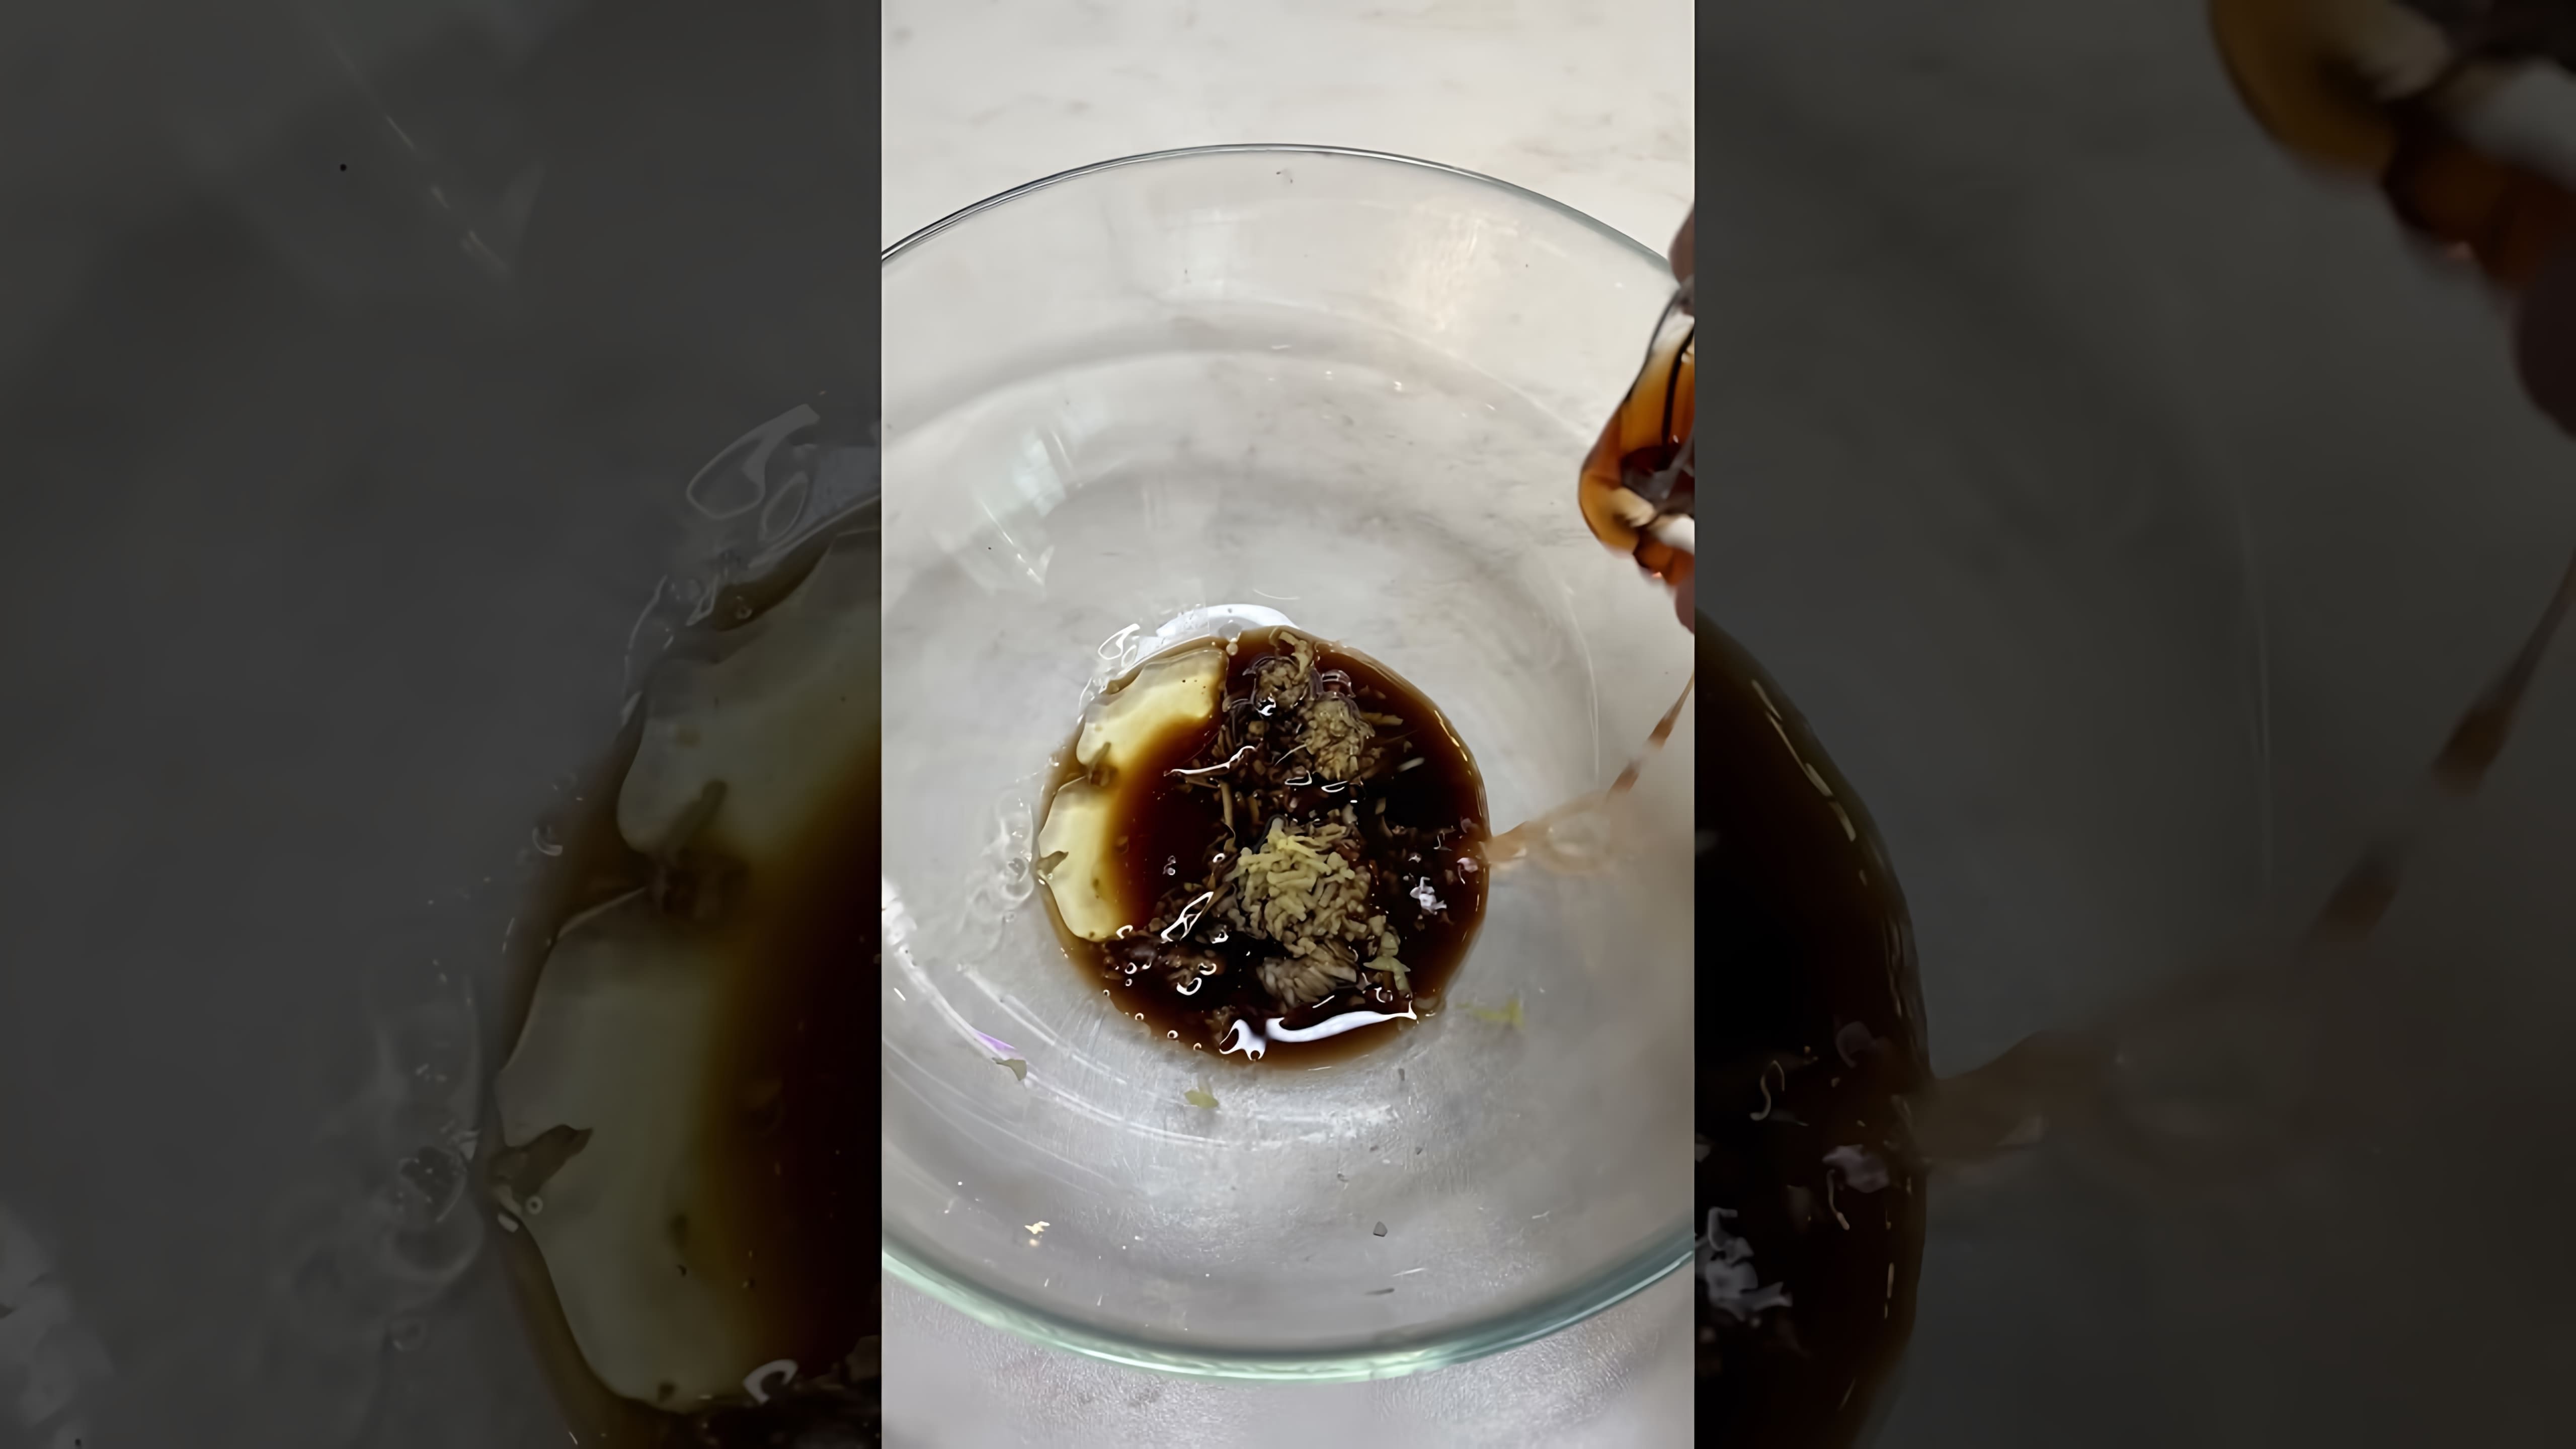 В этом видео демонстрируется простой рецепт приготовления стеклянной лапши, также известной как фунчоза